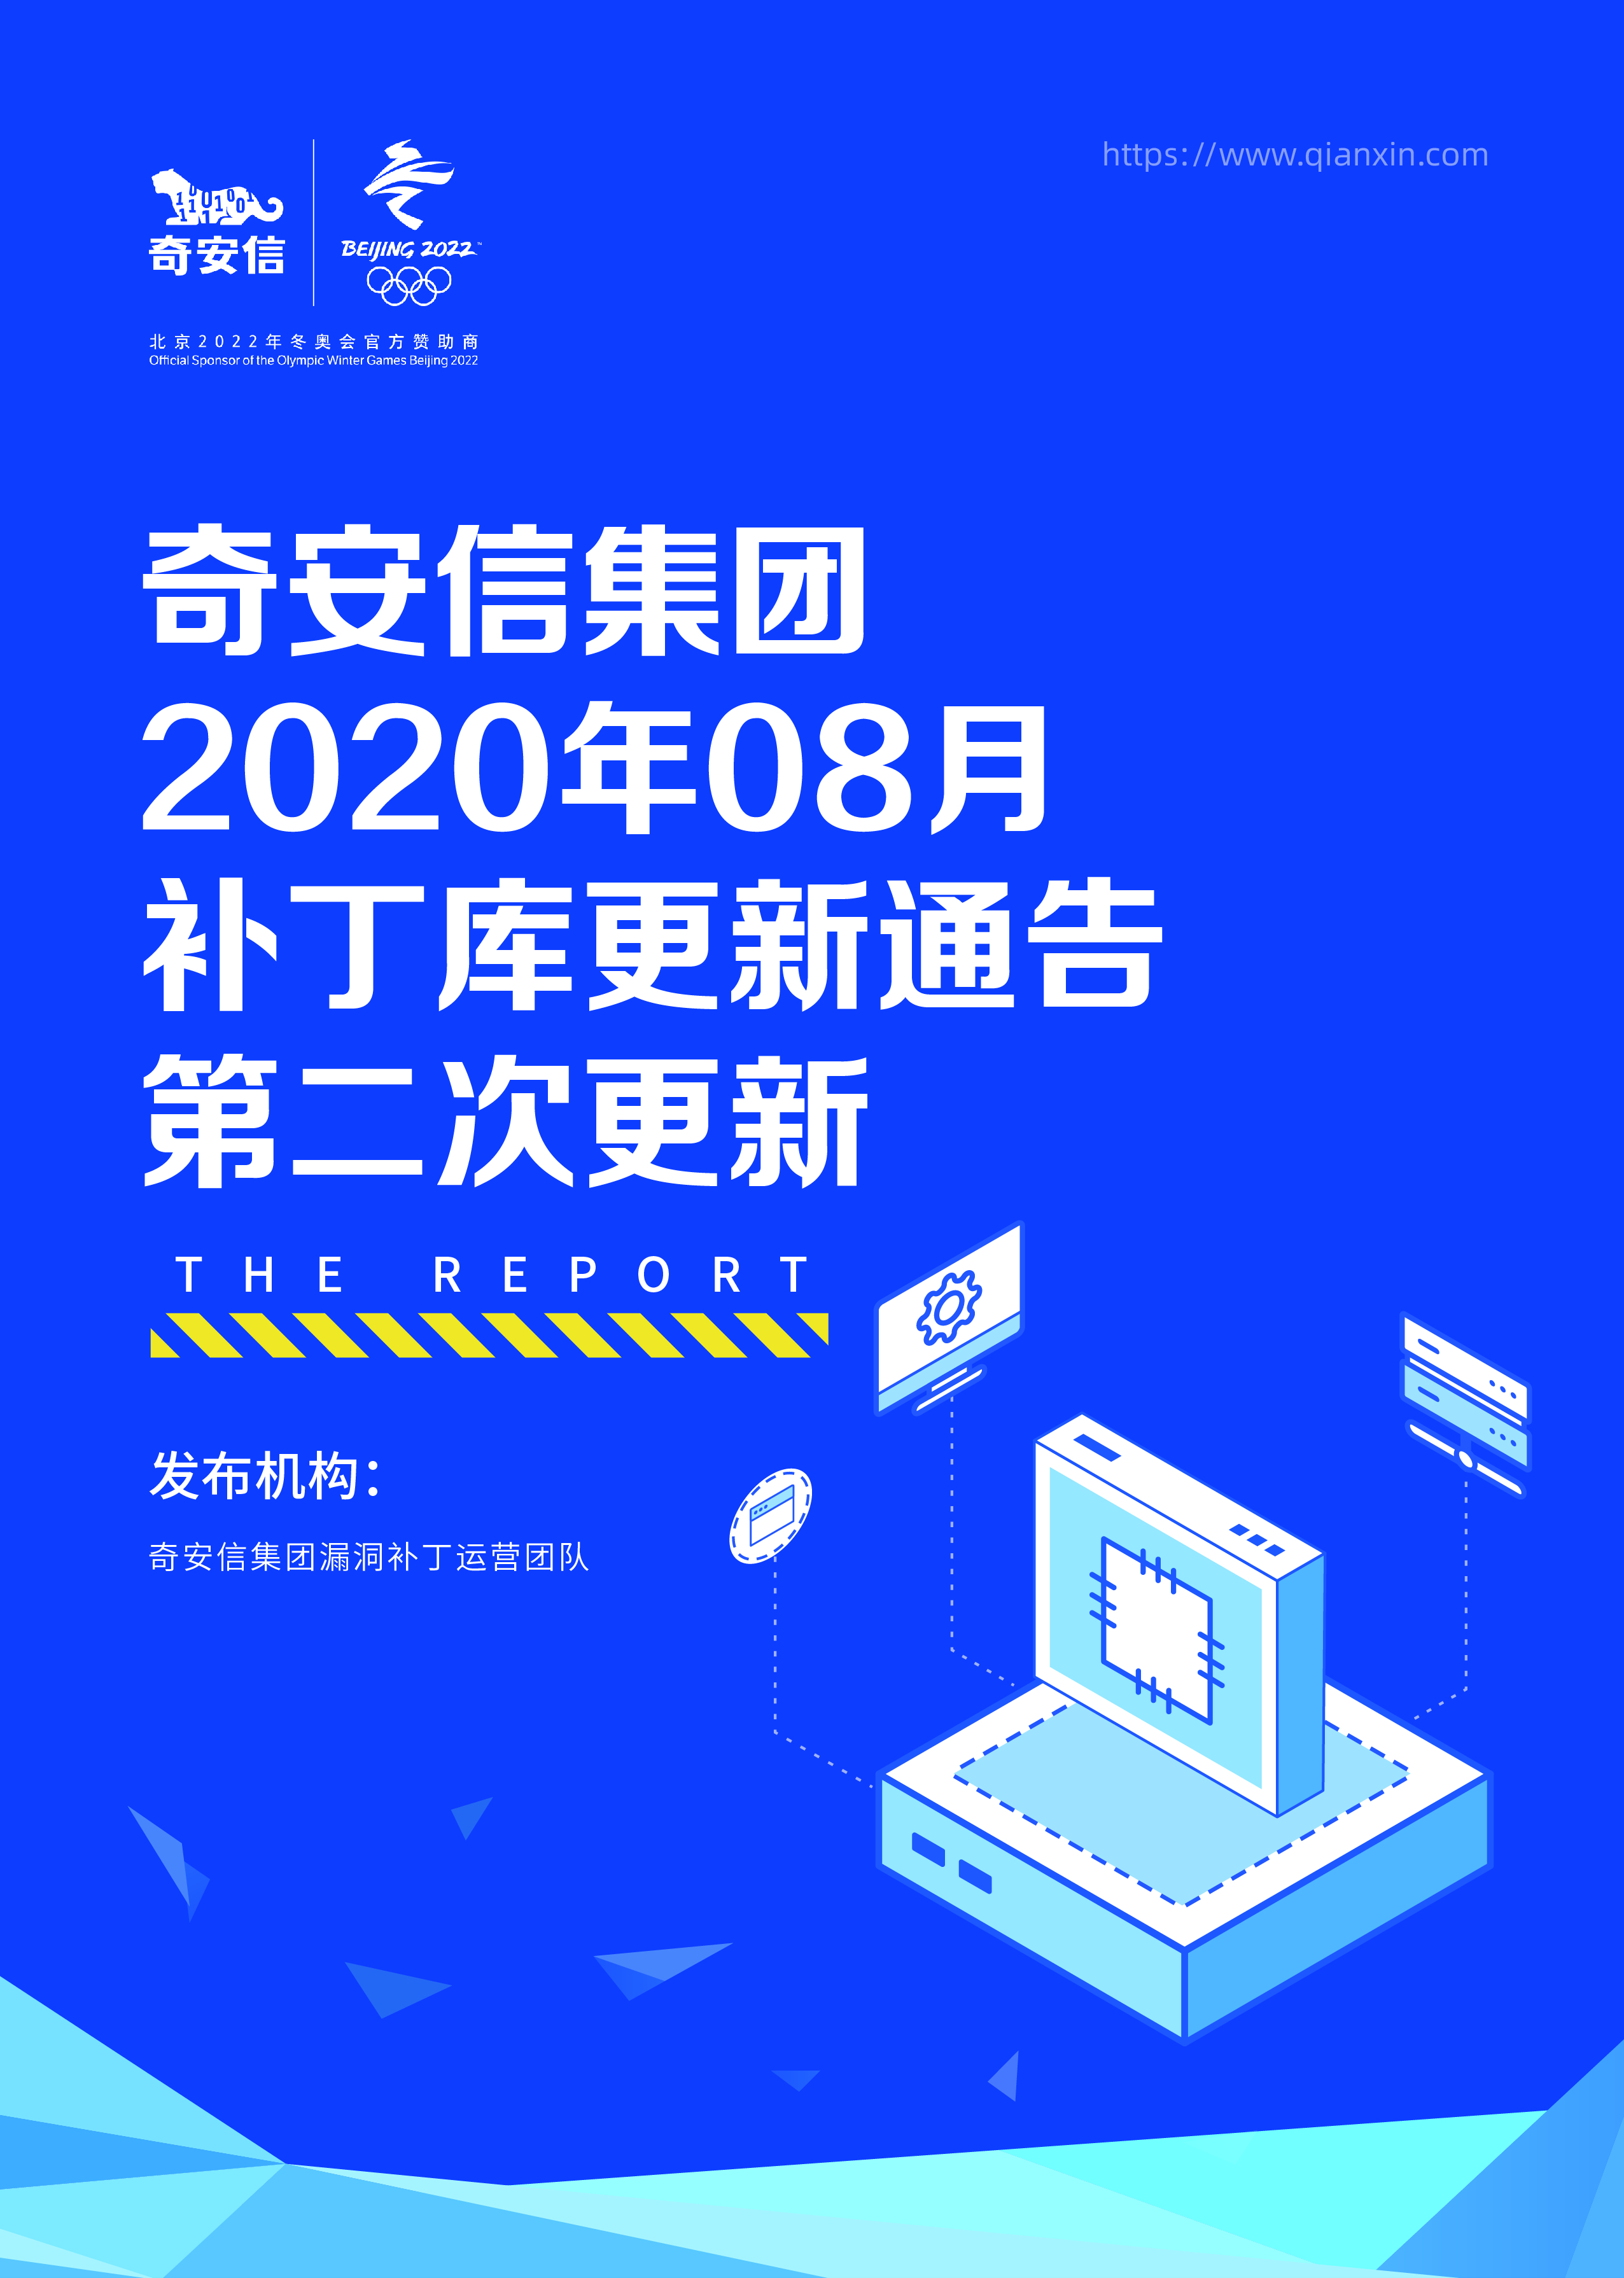 奇安信集团2020年08月补丁库更新通告第二次更新